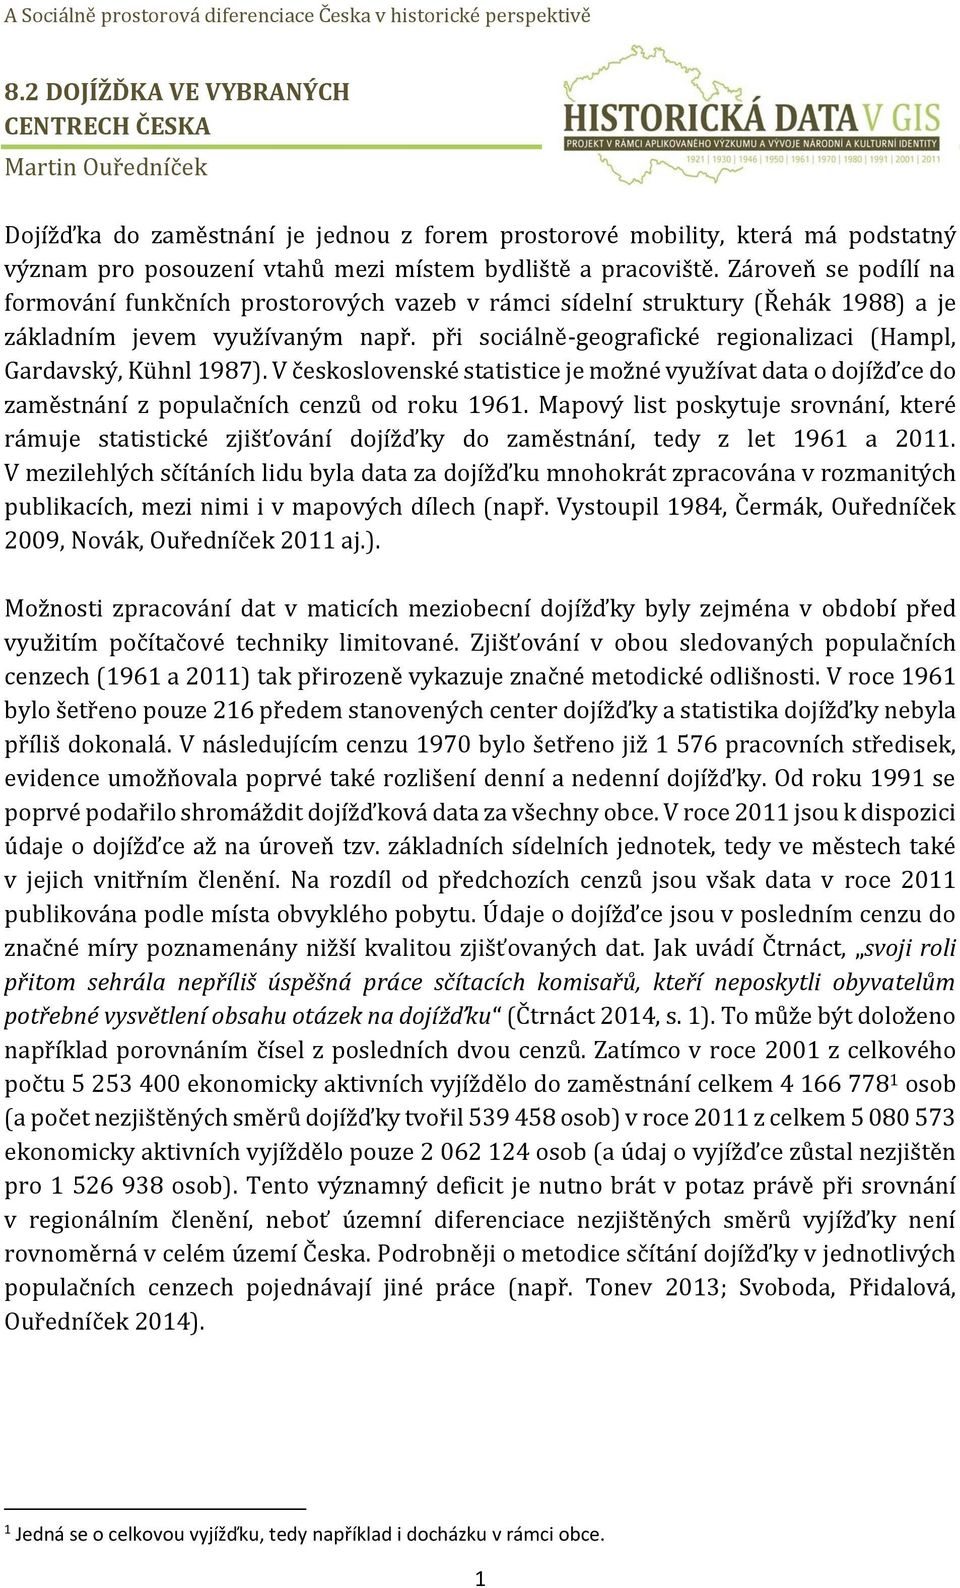 při sociálně-geografické regionalizaci (Hampl, Gardavský, Kühnl 1987). V československé statistice je možné využívat data o dojížďce do zaměstnání z populačních cenzů od roku 1961.